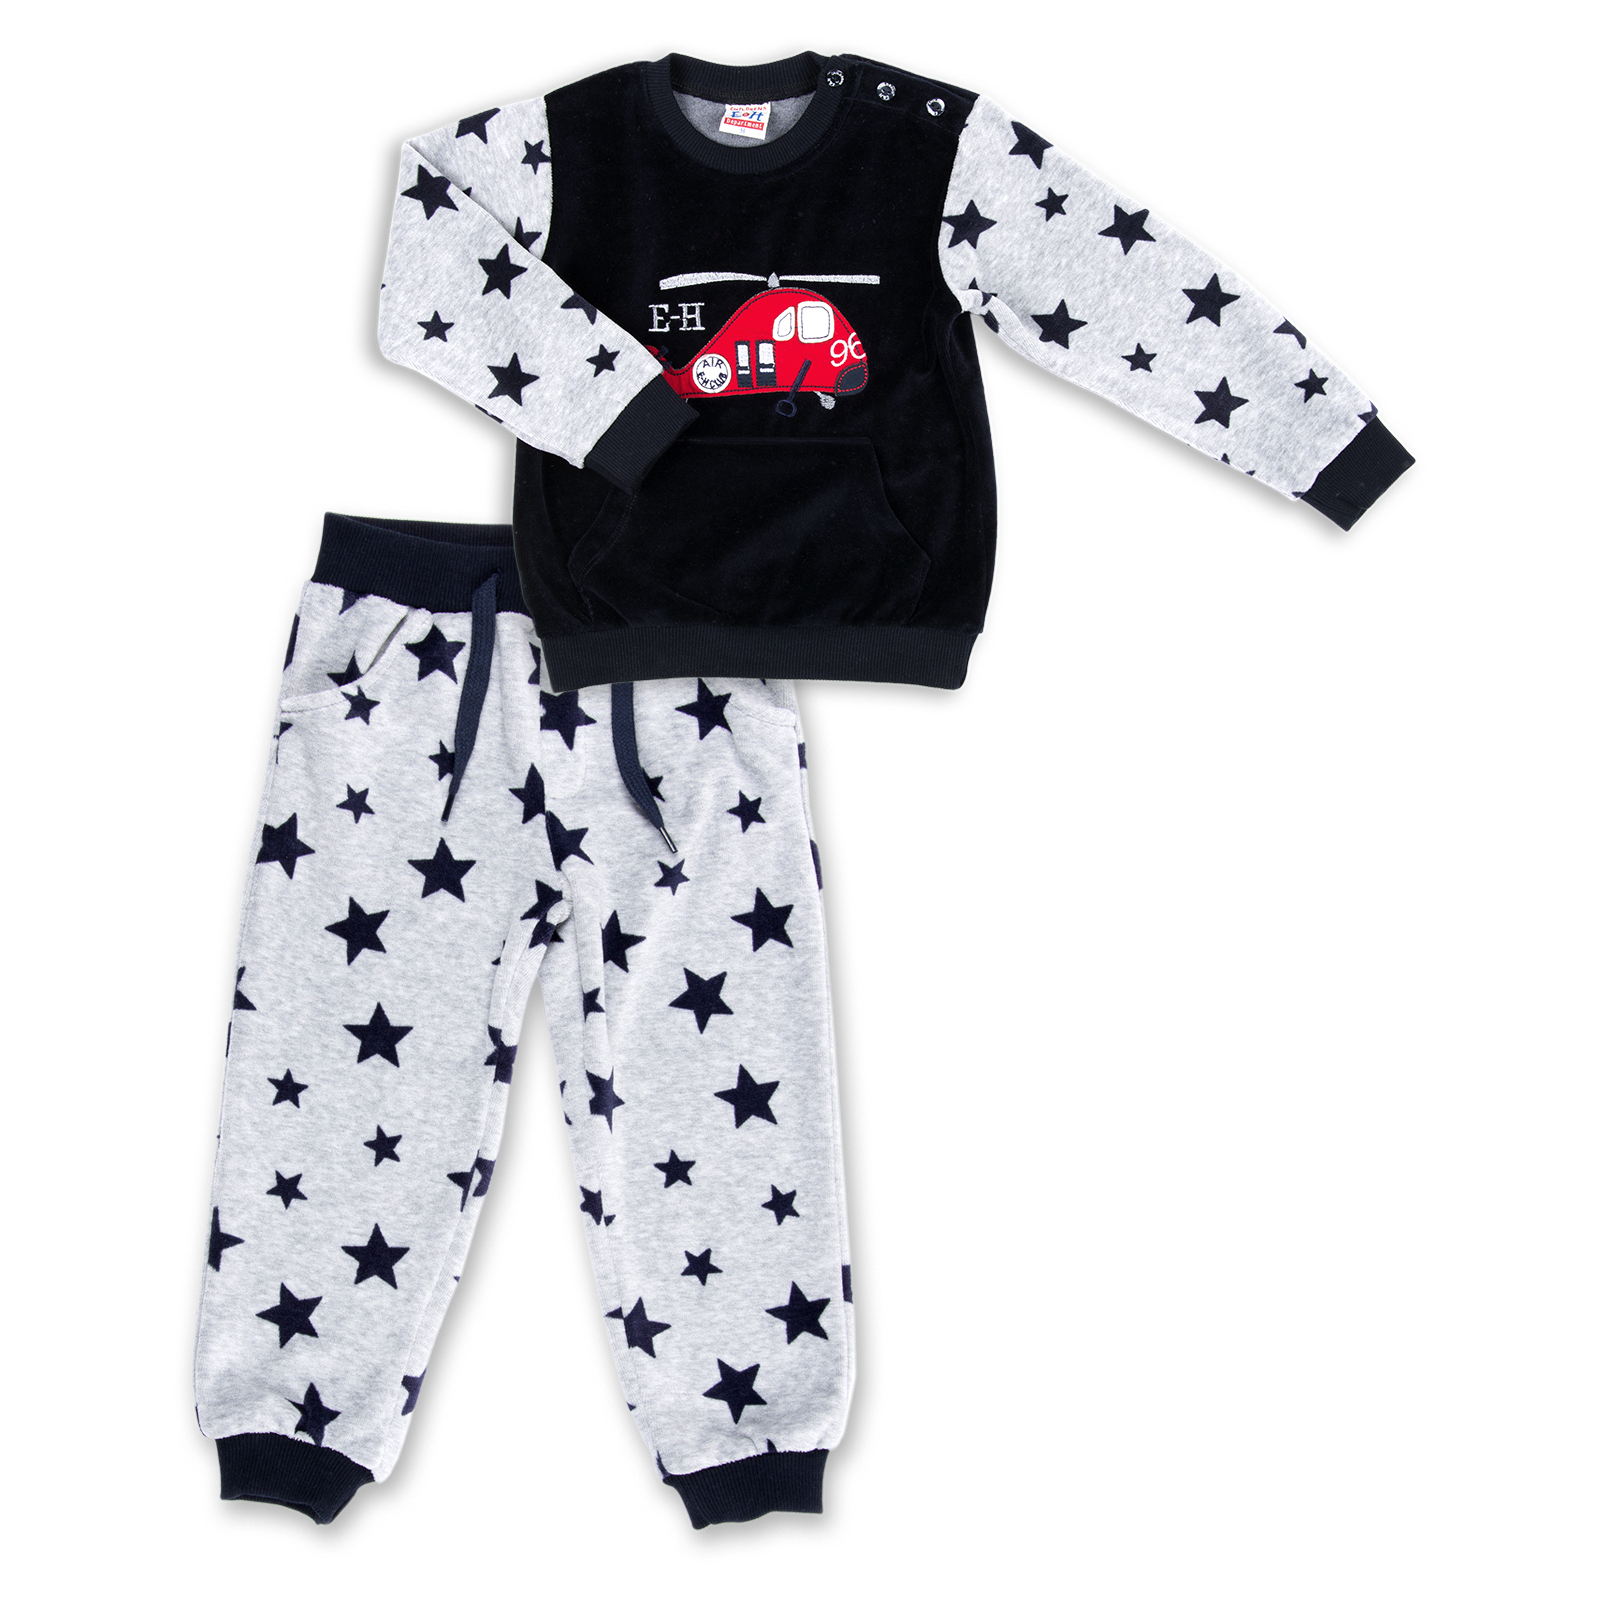 Набор детской одежды Breeze велюровый с вертолетом и штанишками в звездочку (8113-74/B-gray)